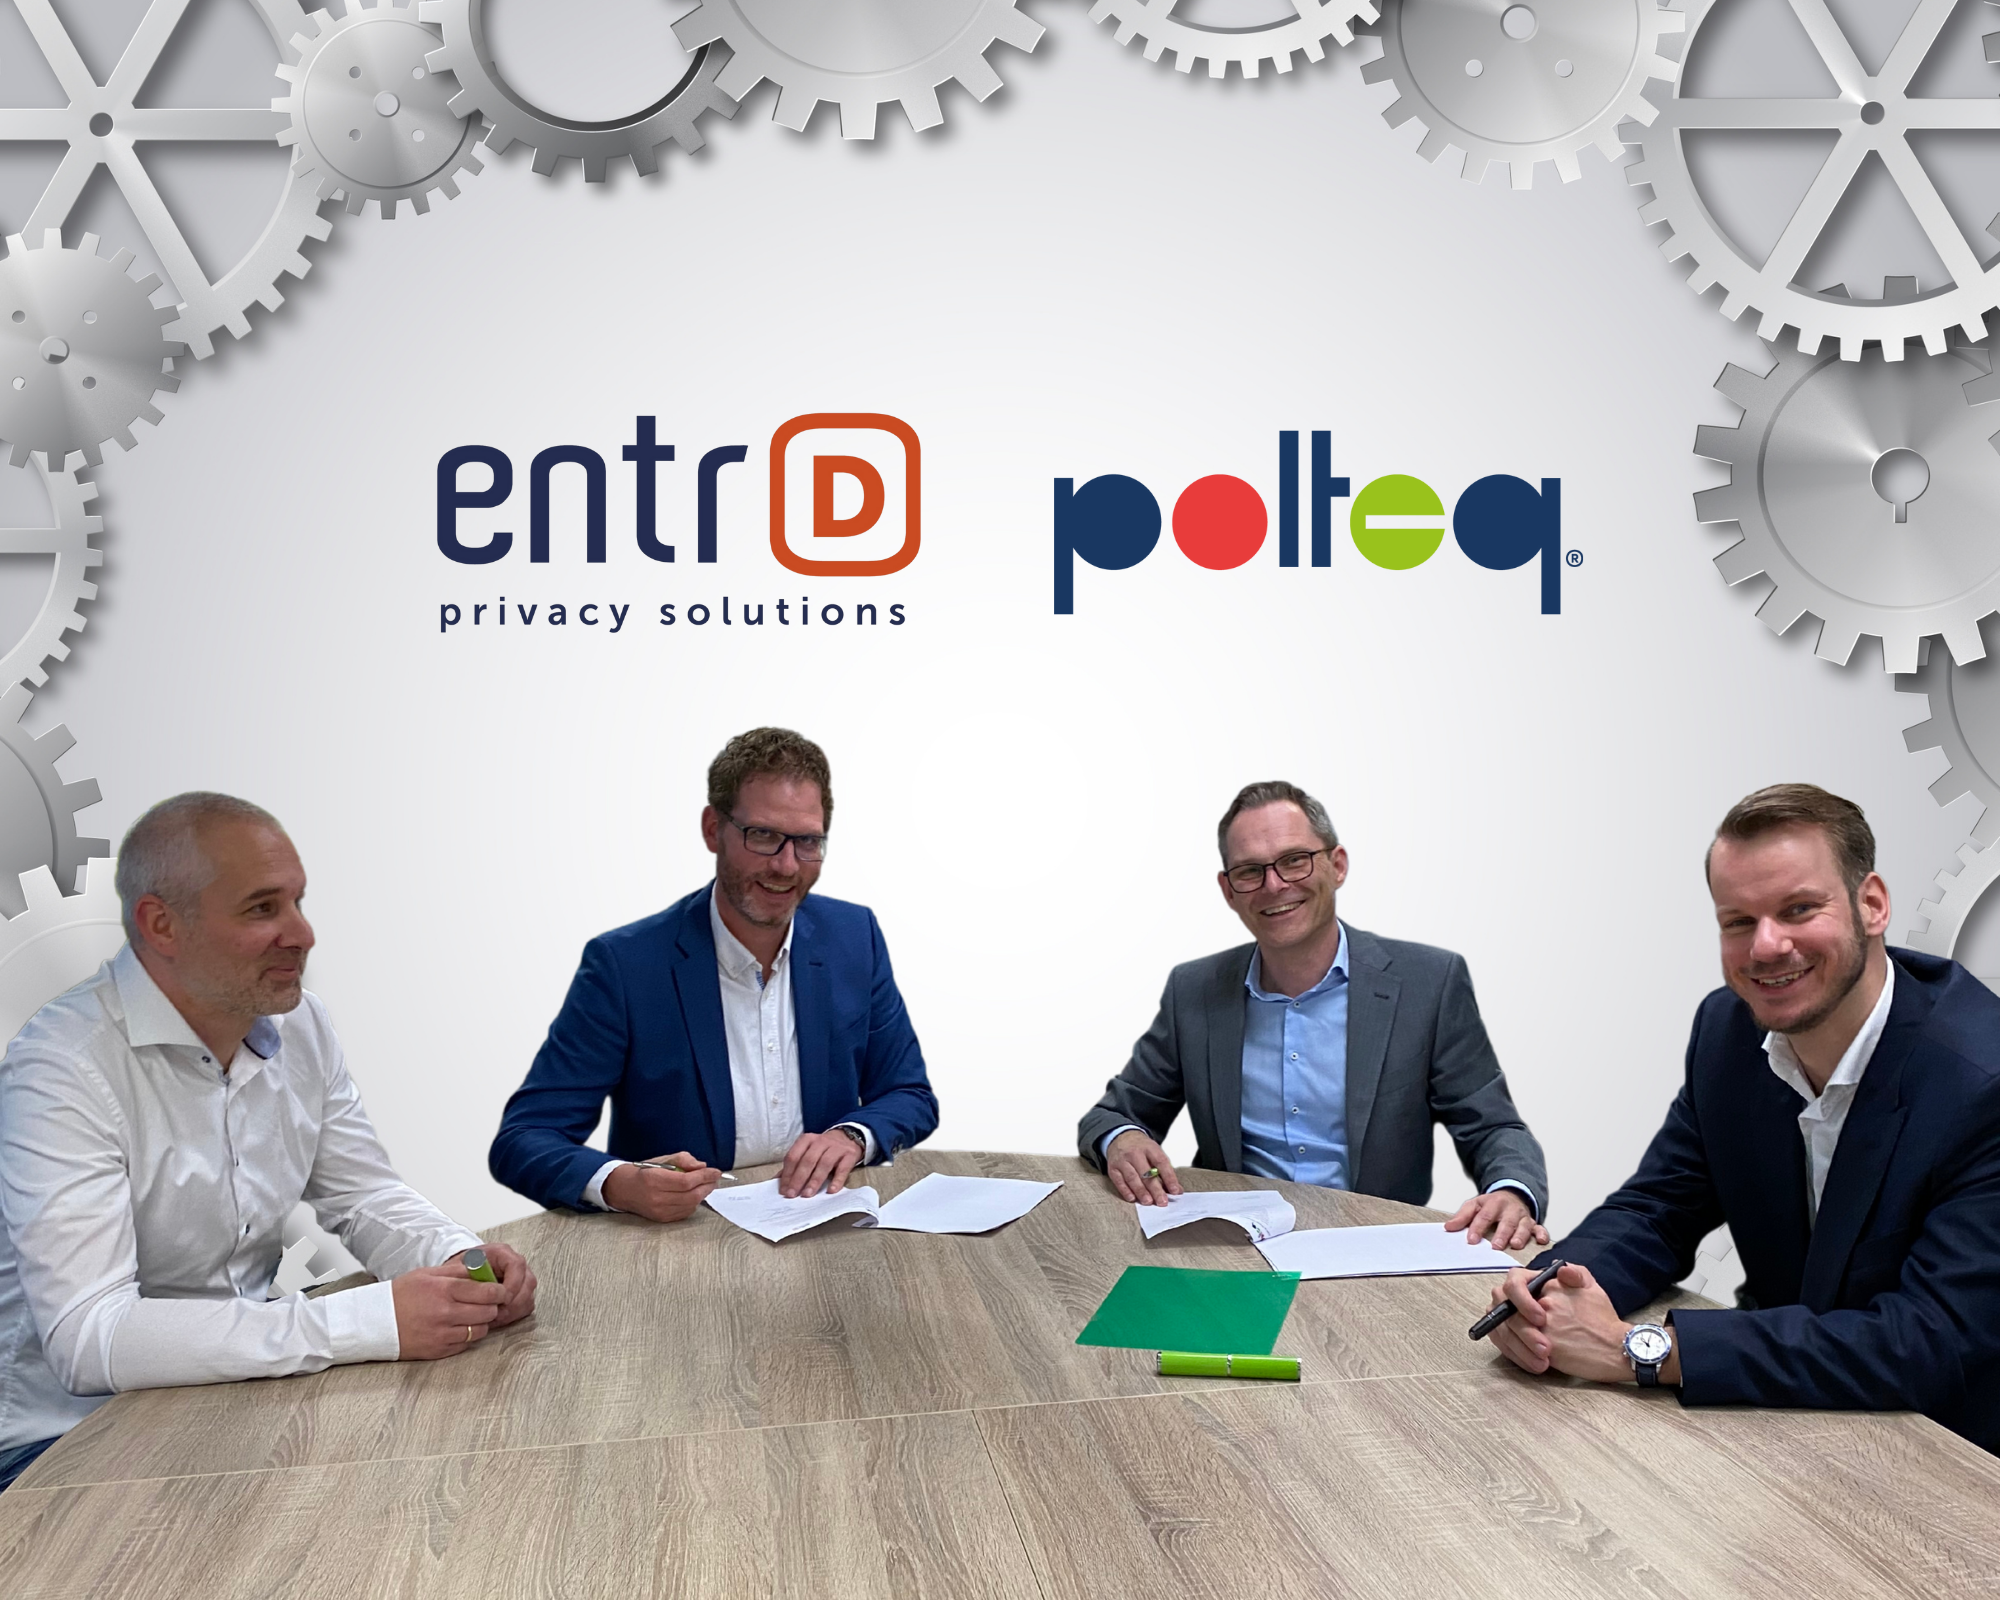 Polteq en EntrD gaan samenwerking aan op gebied softwarekwaliteit